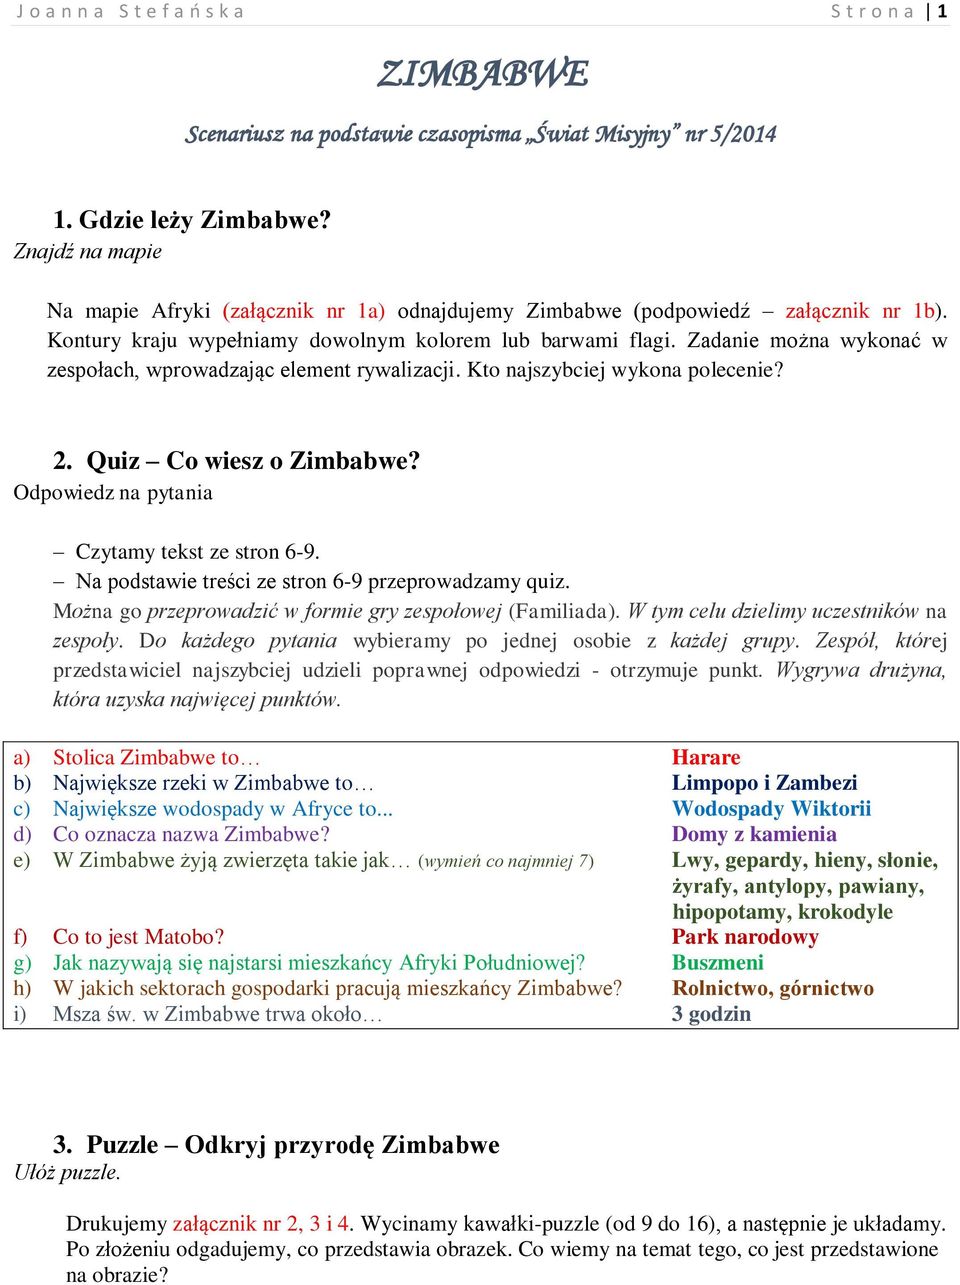 Zadanie można wykonać w zespołach, wprowadzając element rywalizacji. Kto najszybciej wykona polecenie? 2. Quiz Co wiesz o Zimbabwe? Odpowiedz na pytania Czytamy tekst ze stron 6-9.